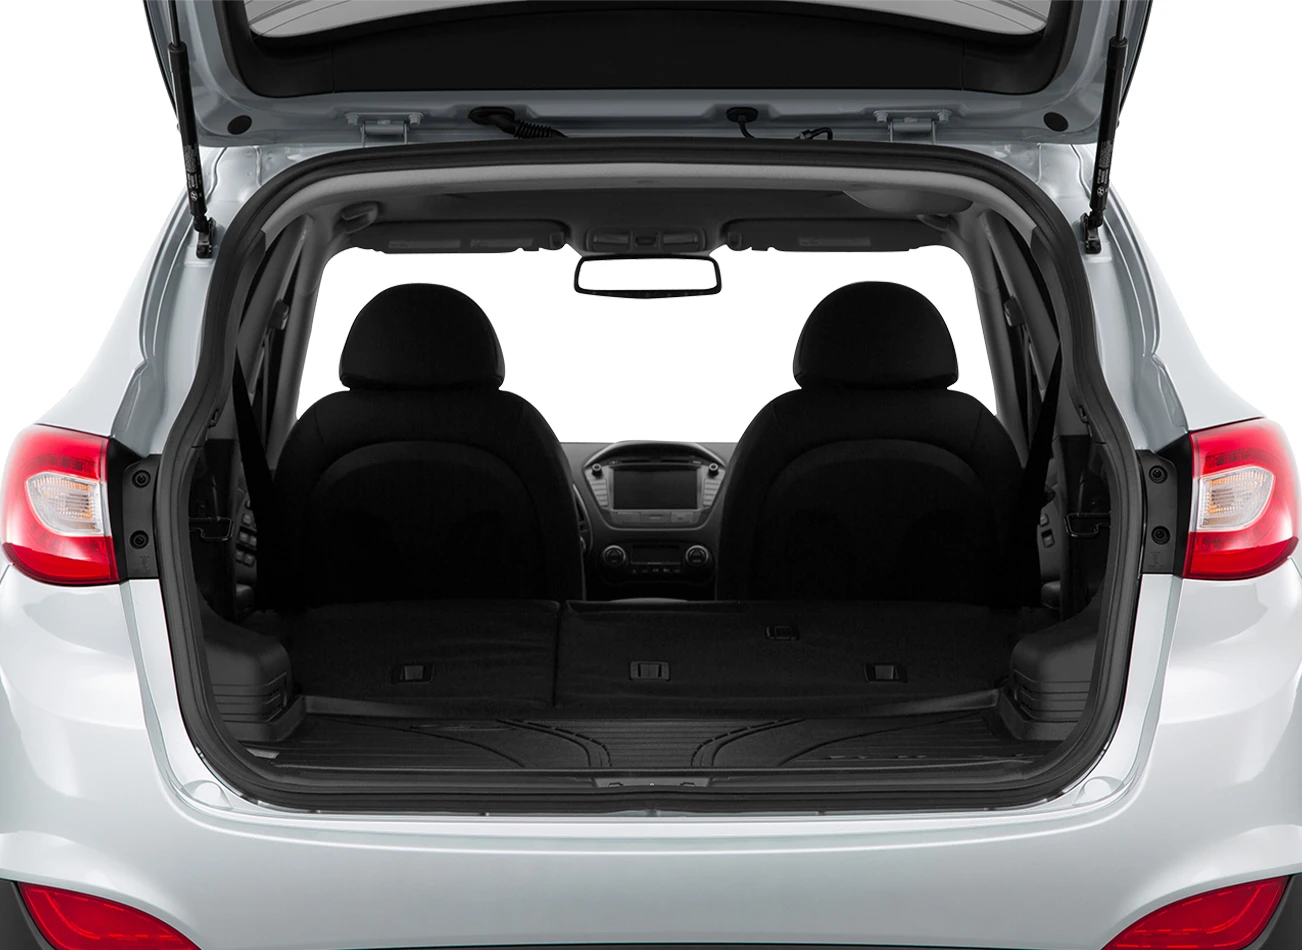 2015 Hyundai Tucson: Reviews, Photos, and More: Reasons to Buy #5 | CarMax